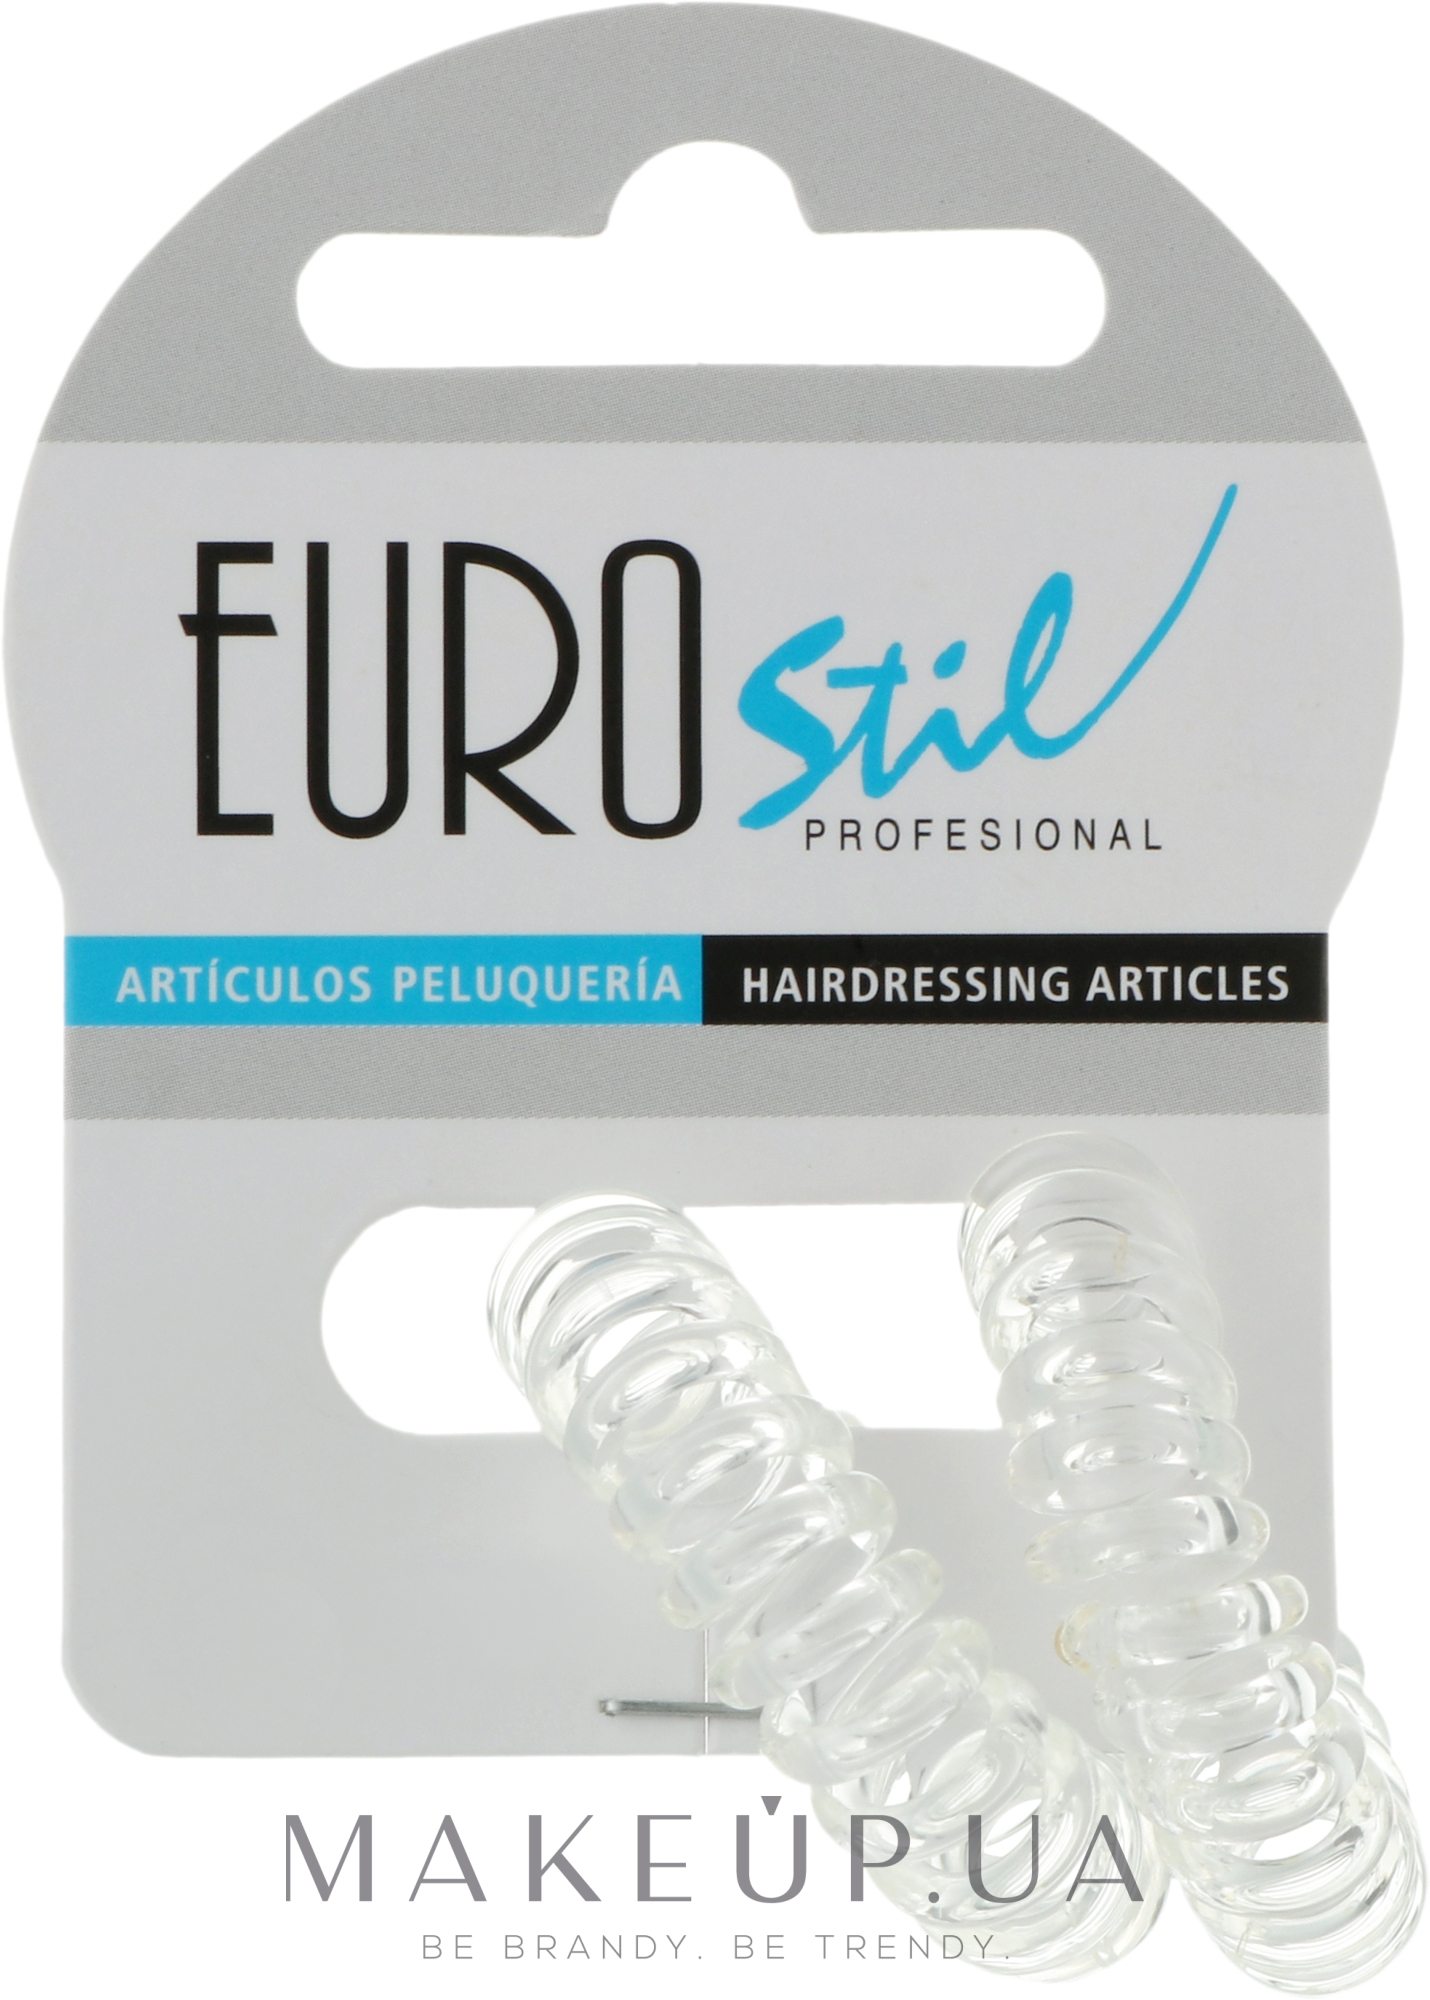 Резинки для волосся, 2 шт., 04806/56 - Eurostil — фото 2шт